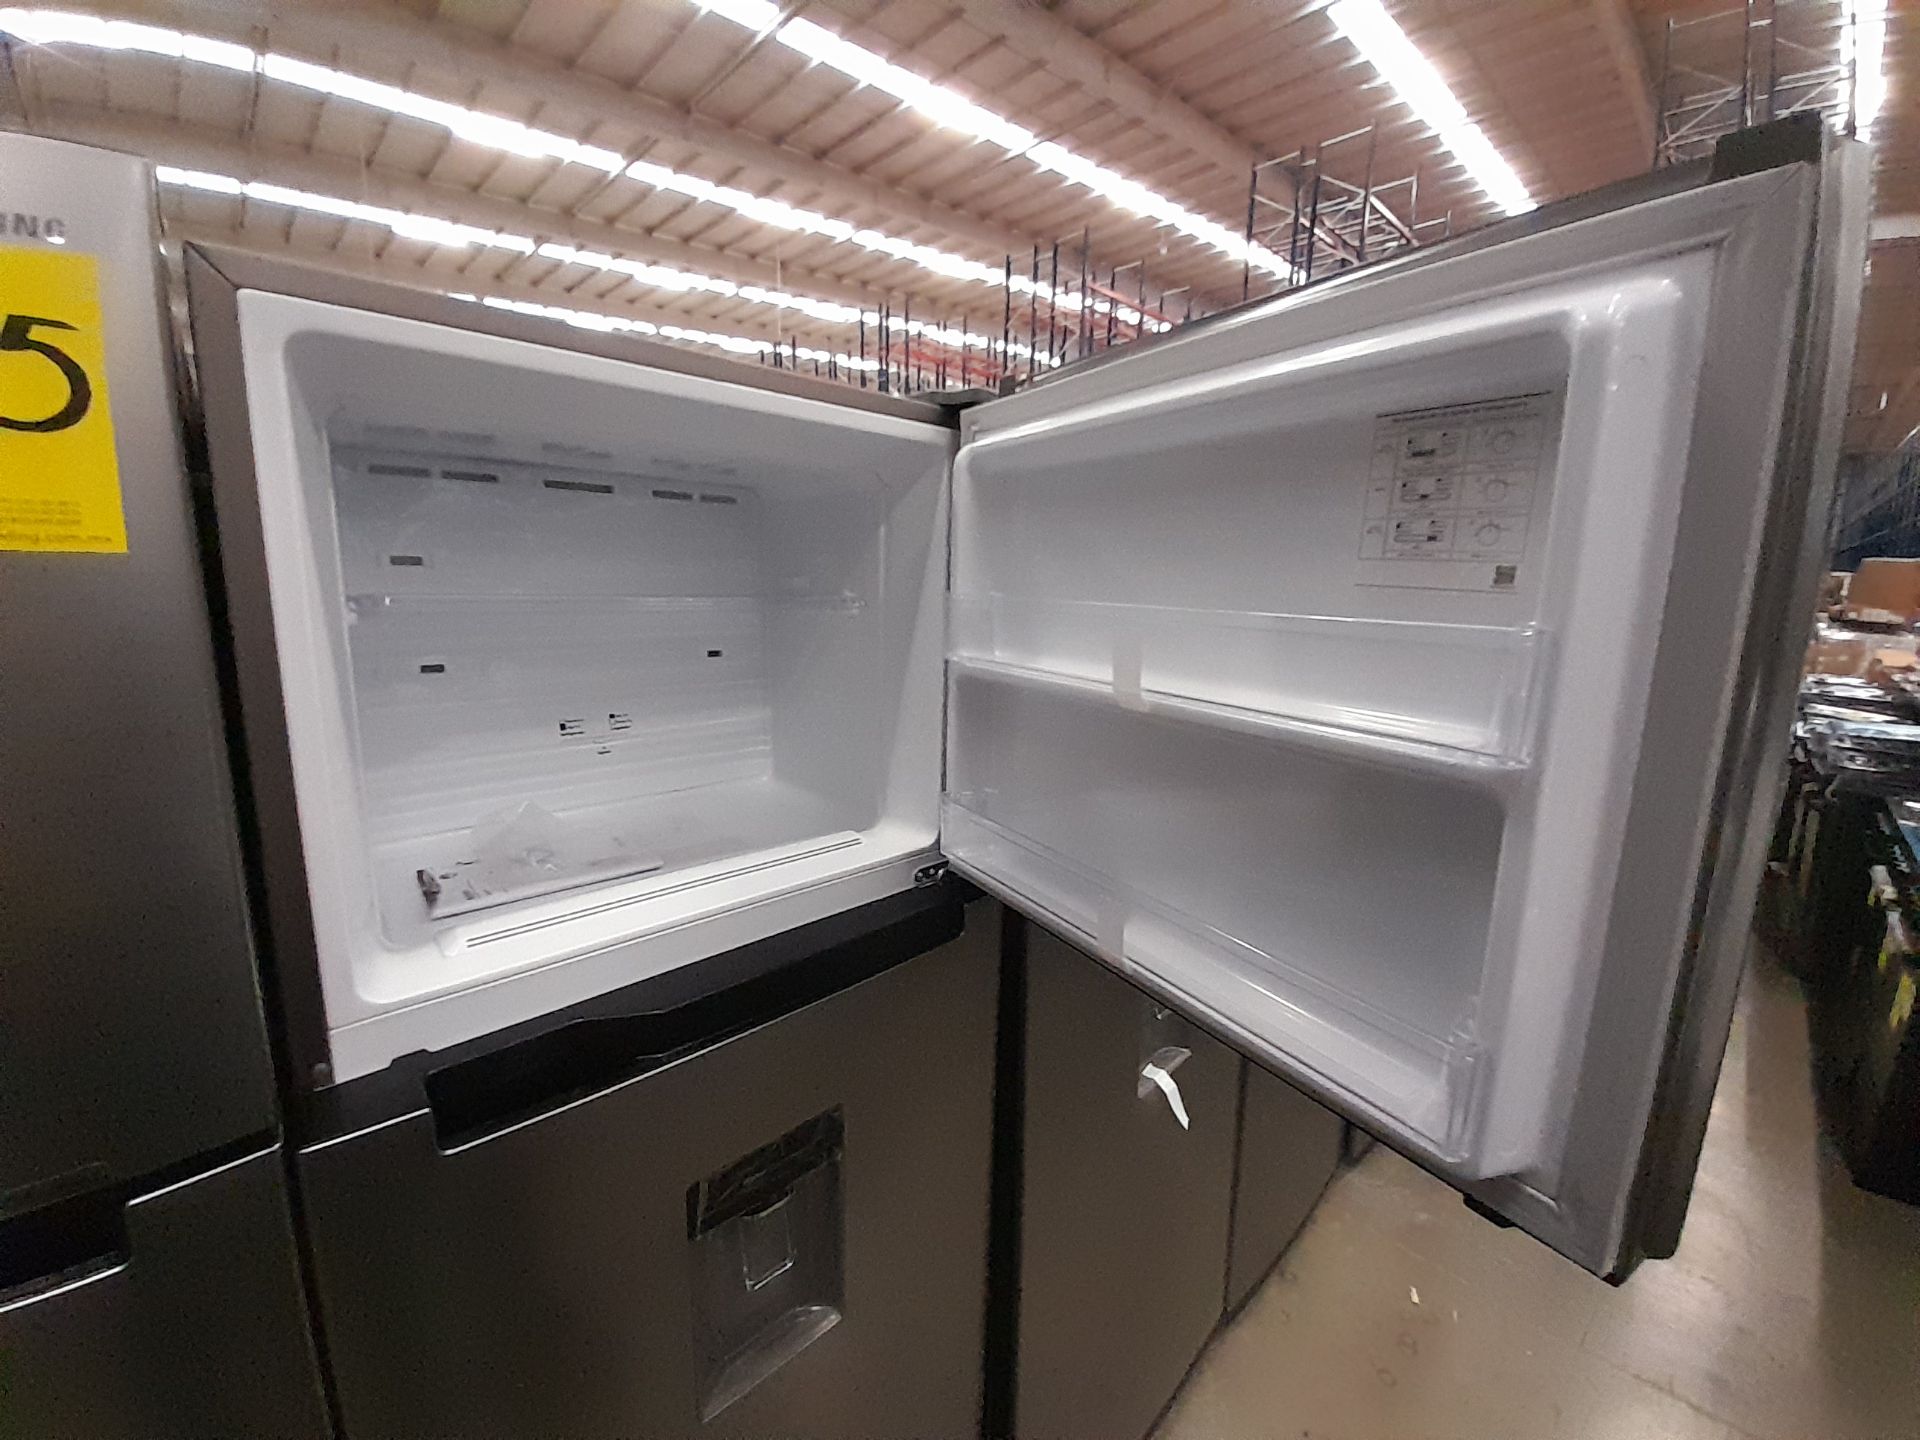 Lote de 2 refrigeradores contiene: 1 refrigerador Marca SAMSUNG, Modelo RT38A57IJS9, Serie 02691M, - Image 6 of 8